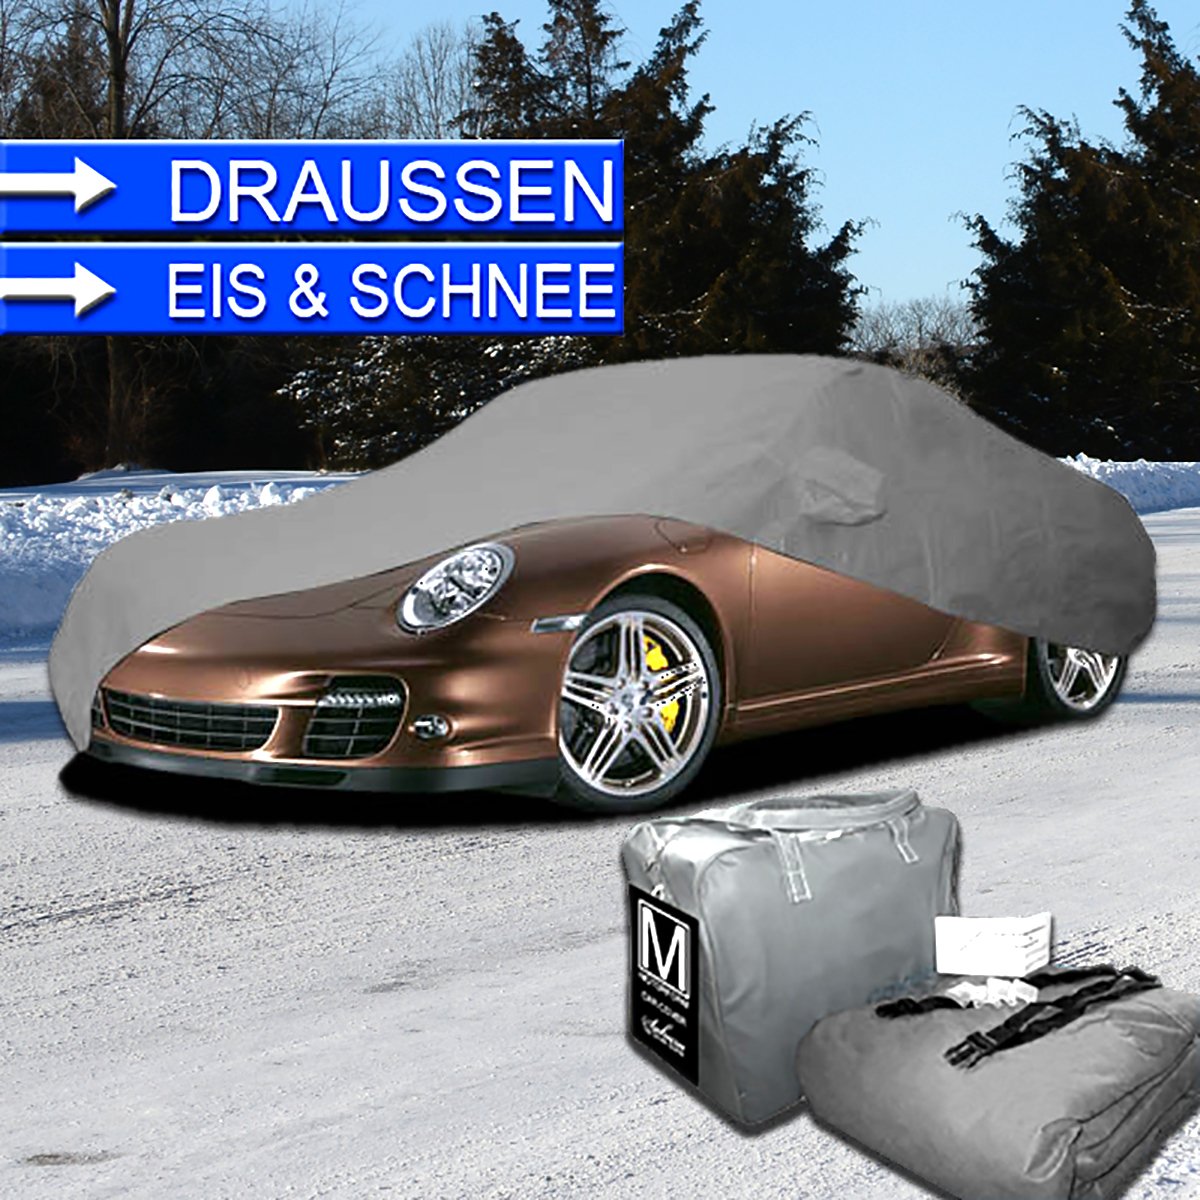 https://www.motorform-shop.de/images/mediamanager/product_images/original_images/Porsche-Winter-Outdoor-Auto-Car-Cover-Plane-Schutzdecke-Schutzhuelle-wasserdicht-gummiert-Motorform-mit-Spiegeltaschen.jpg